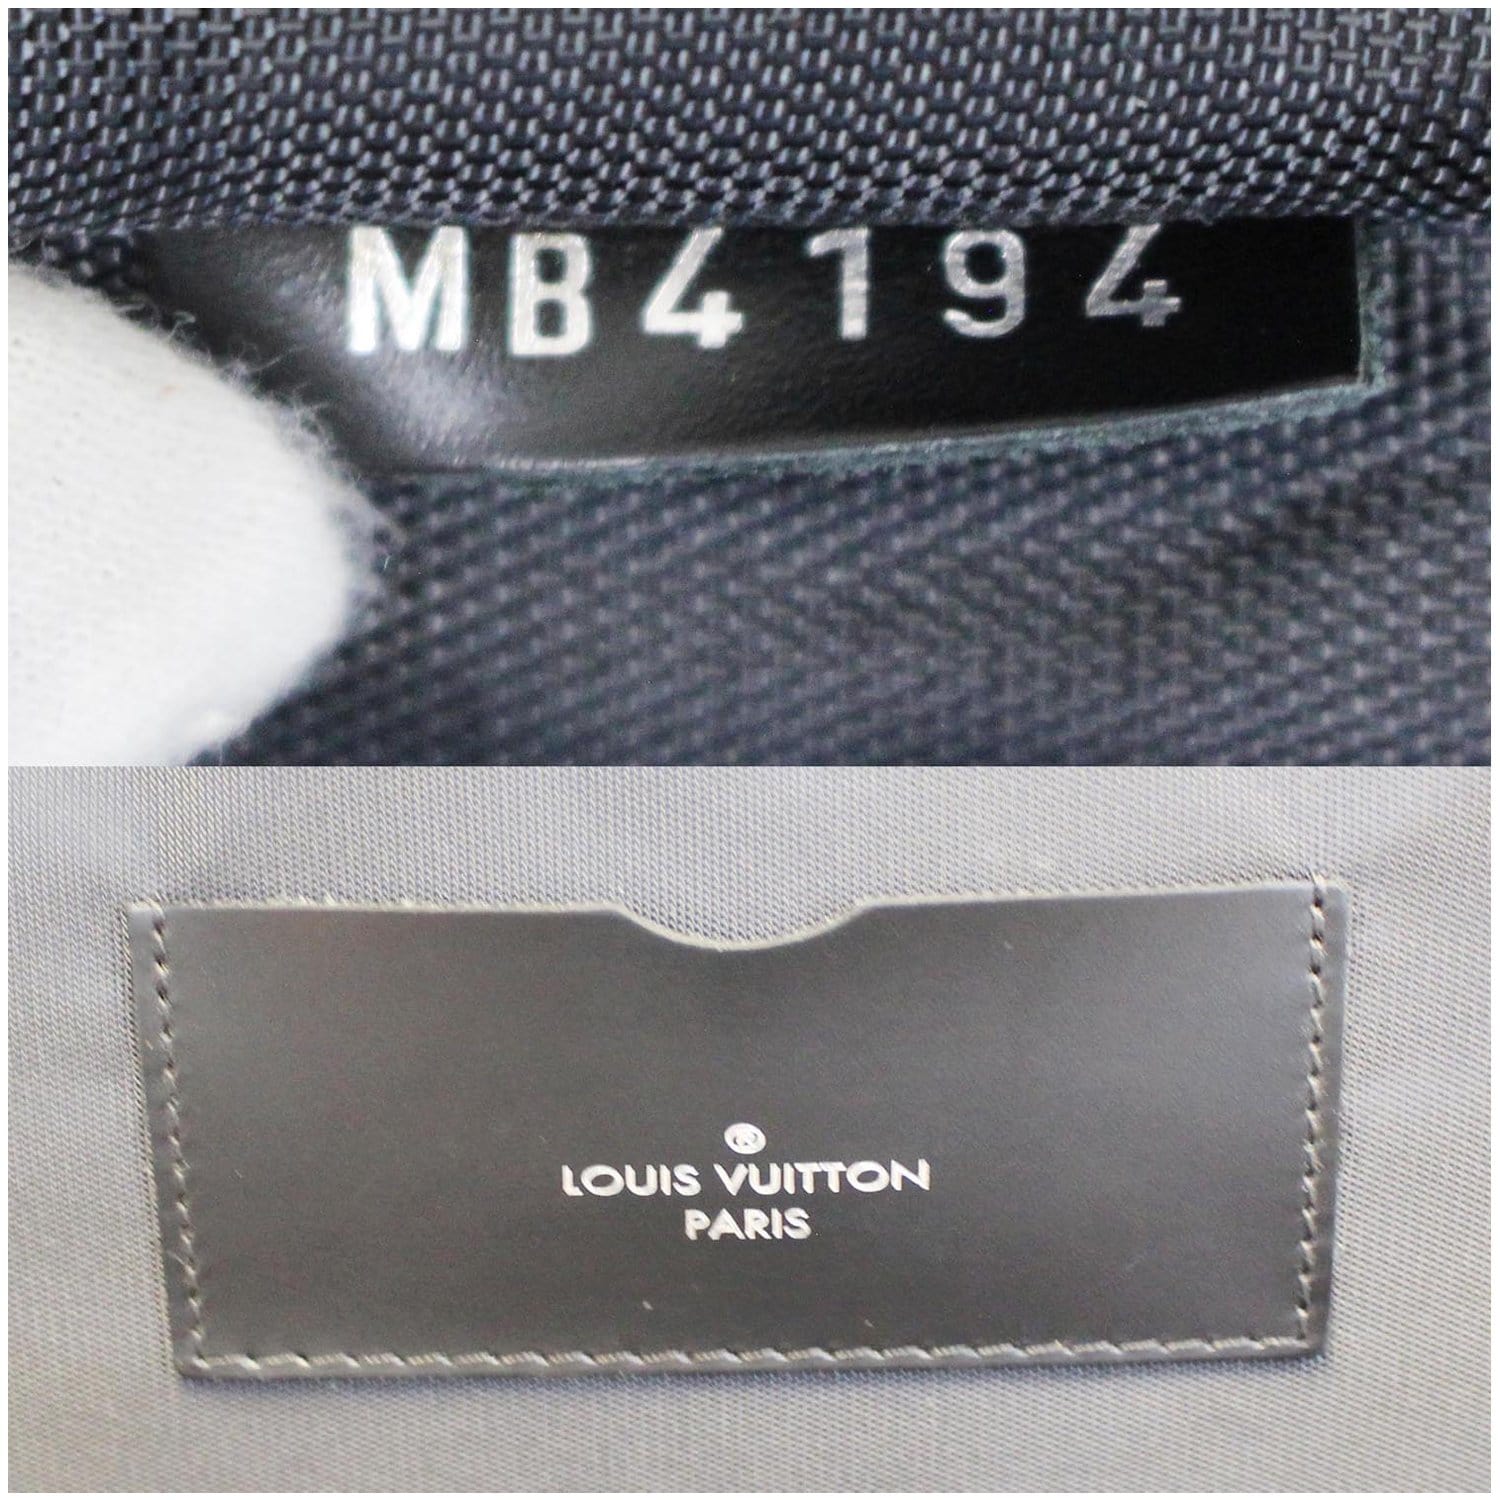 Louis Vuitton - Pégase Légère 55 Business